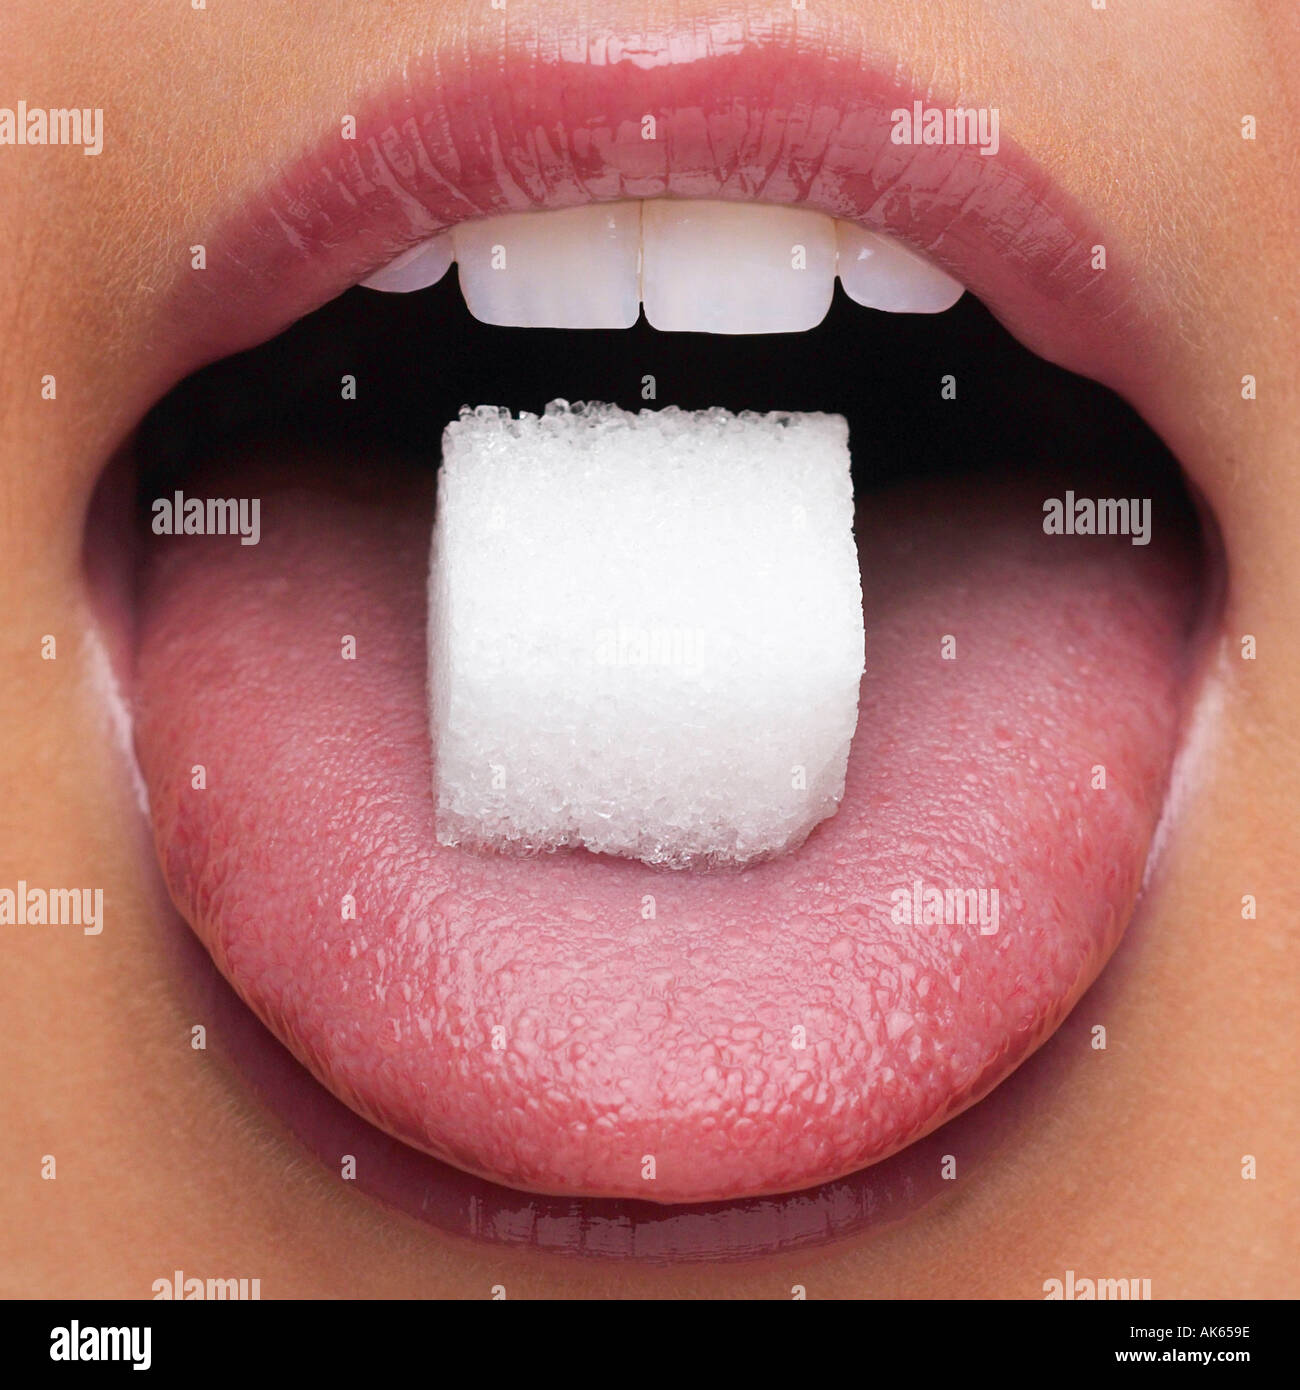 Piece of sugar on woman s tongue Zuckerwuerfel auf Zunge einer Frau Nahrungsmittel food quadratisch square Mund mouth Stock Photo